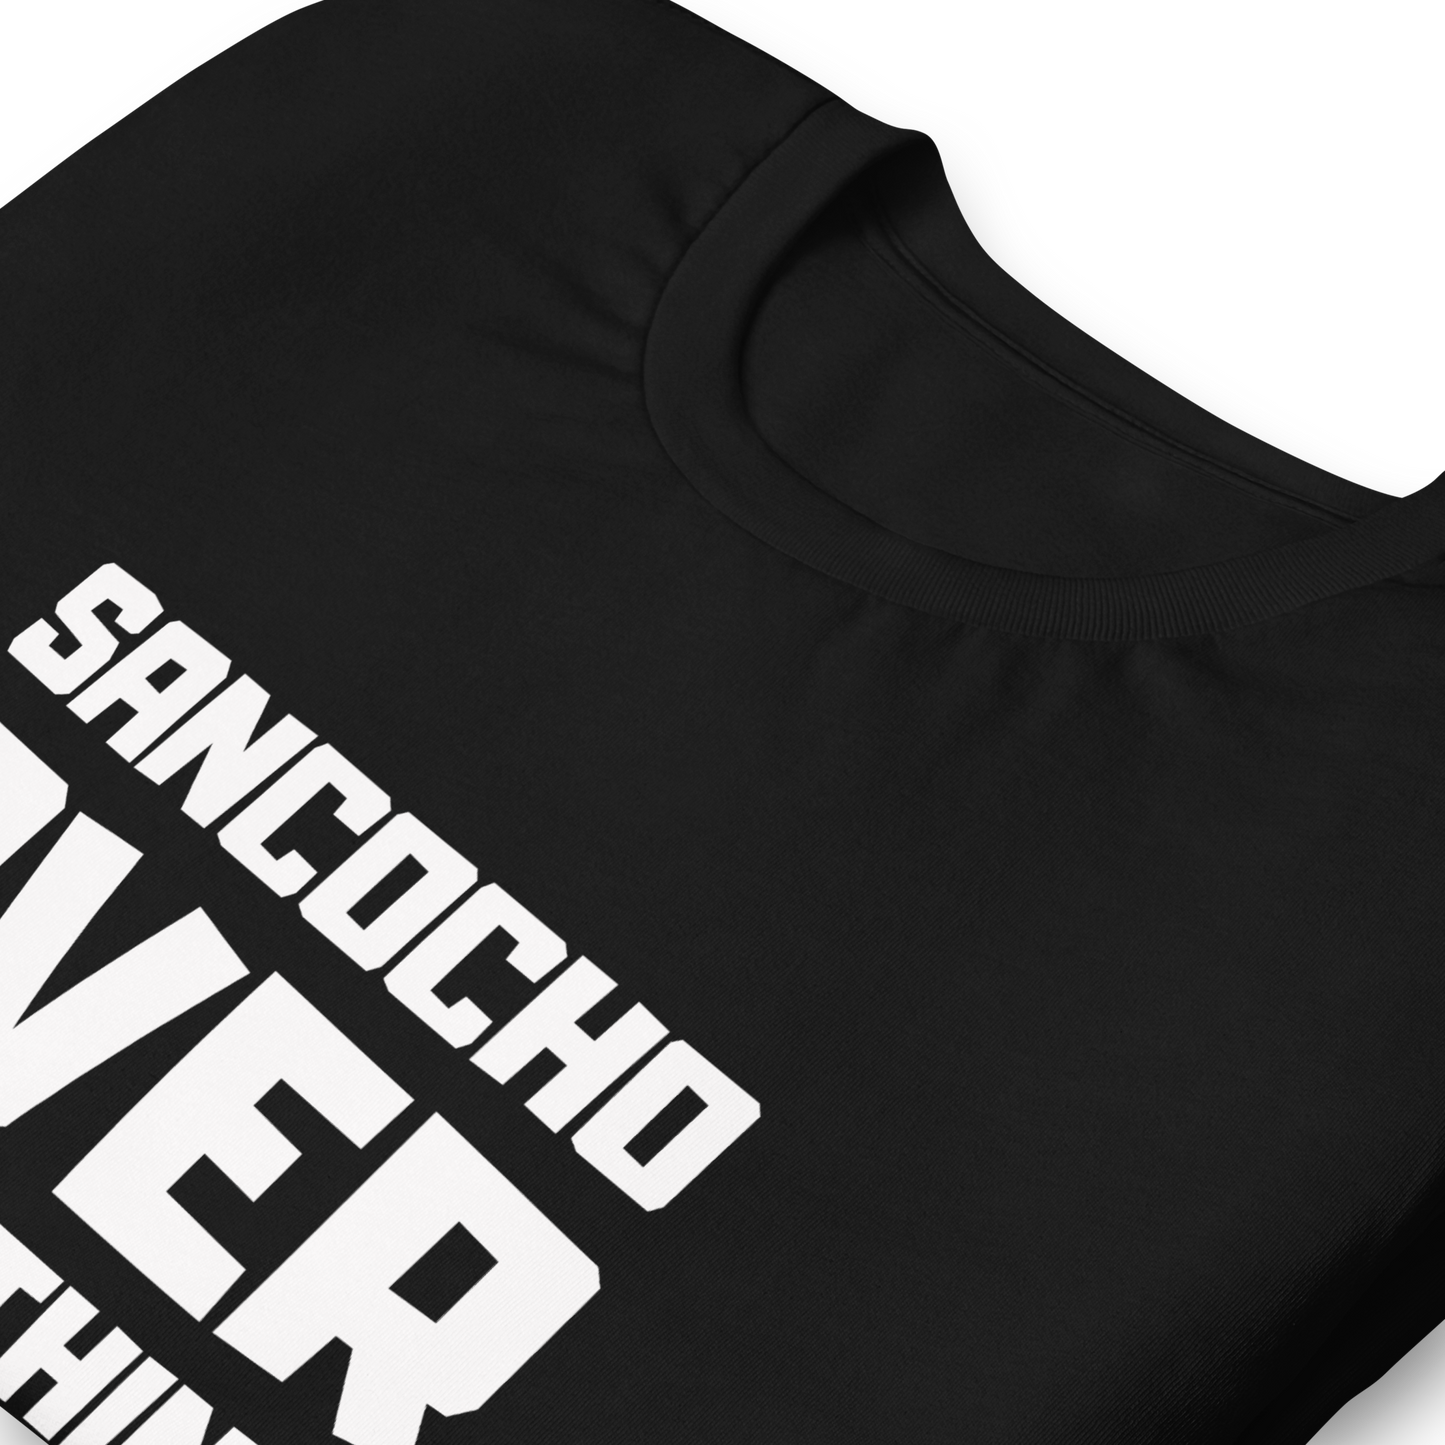 “SANCOCHO OVER EVERYTHING” Unisex Premium T-Shirt